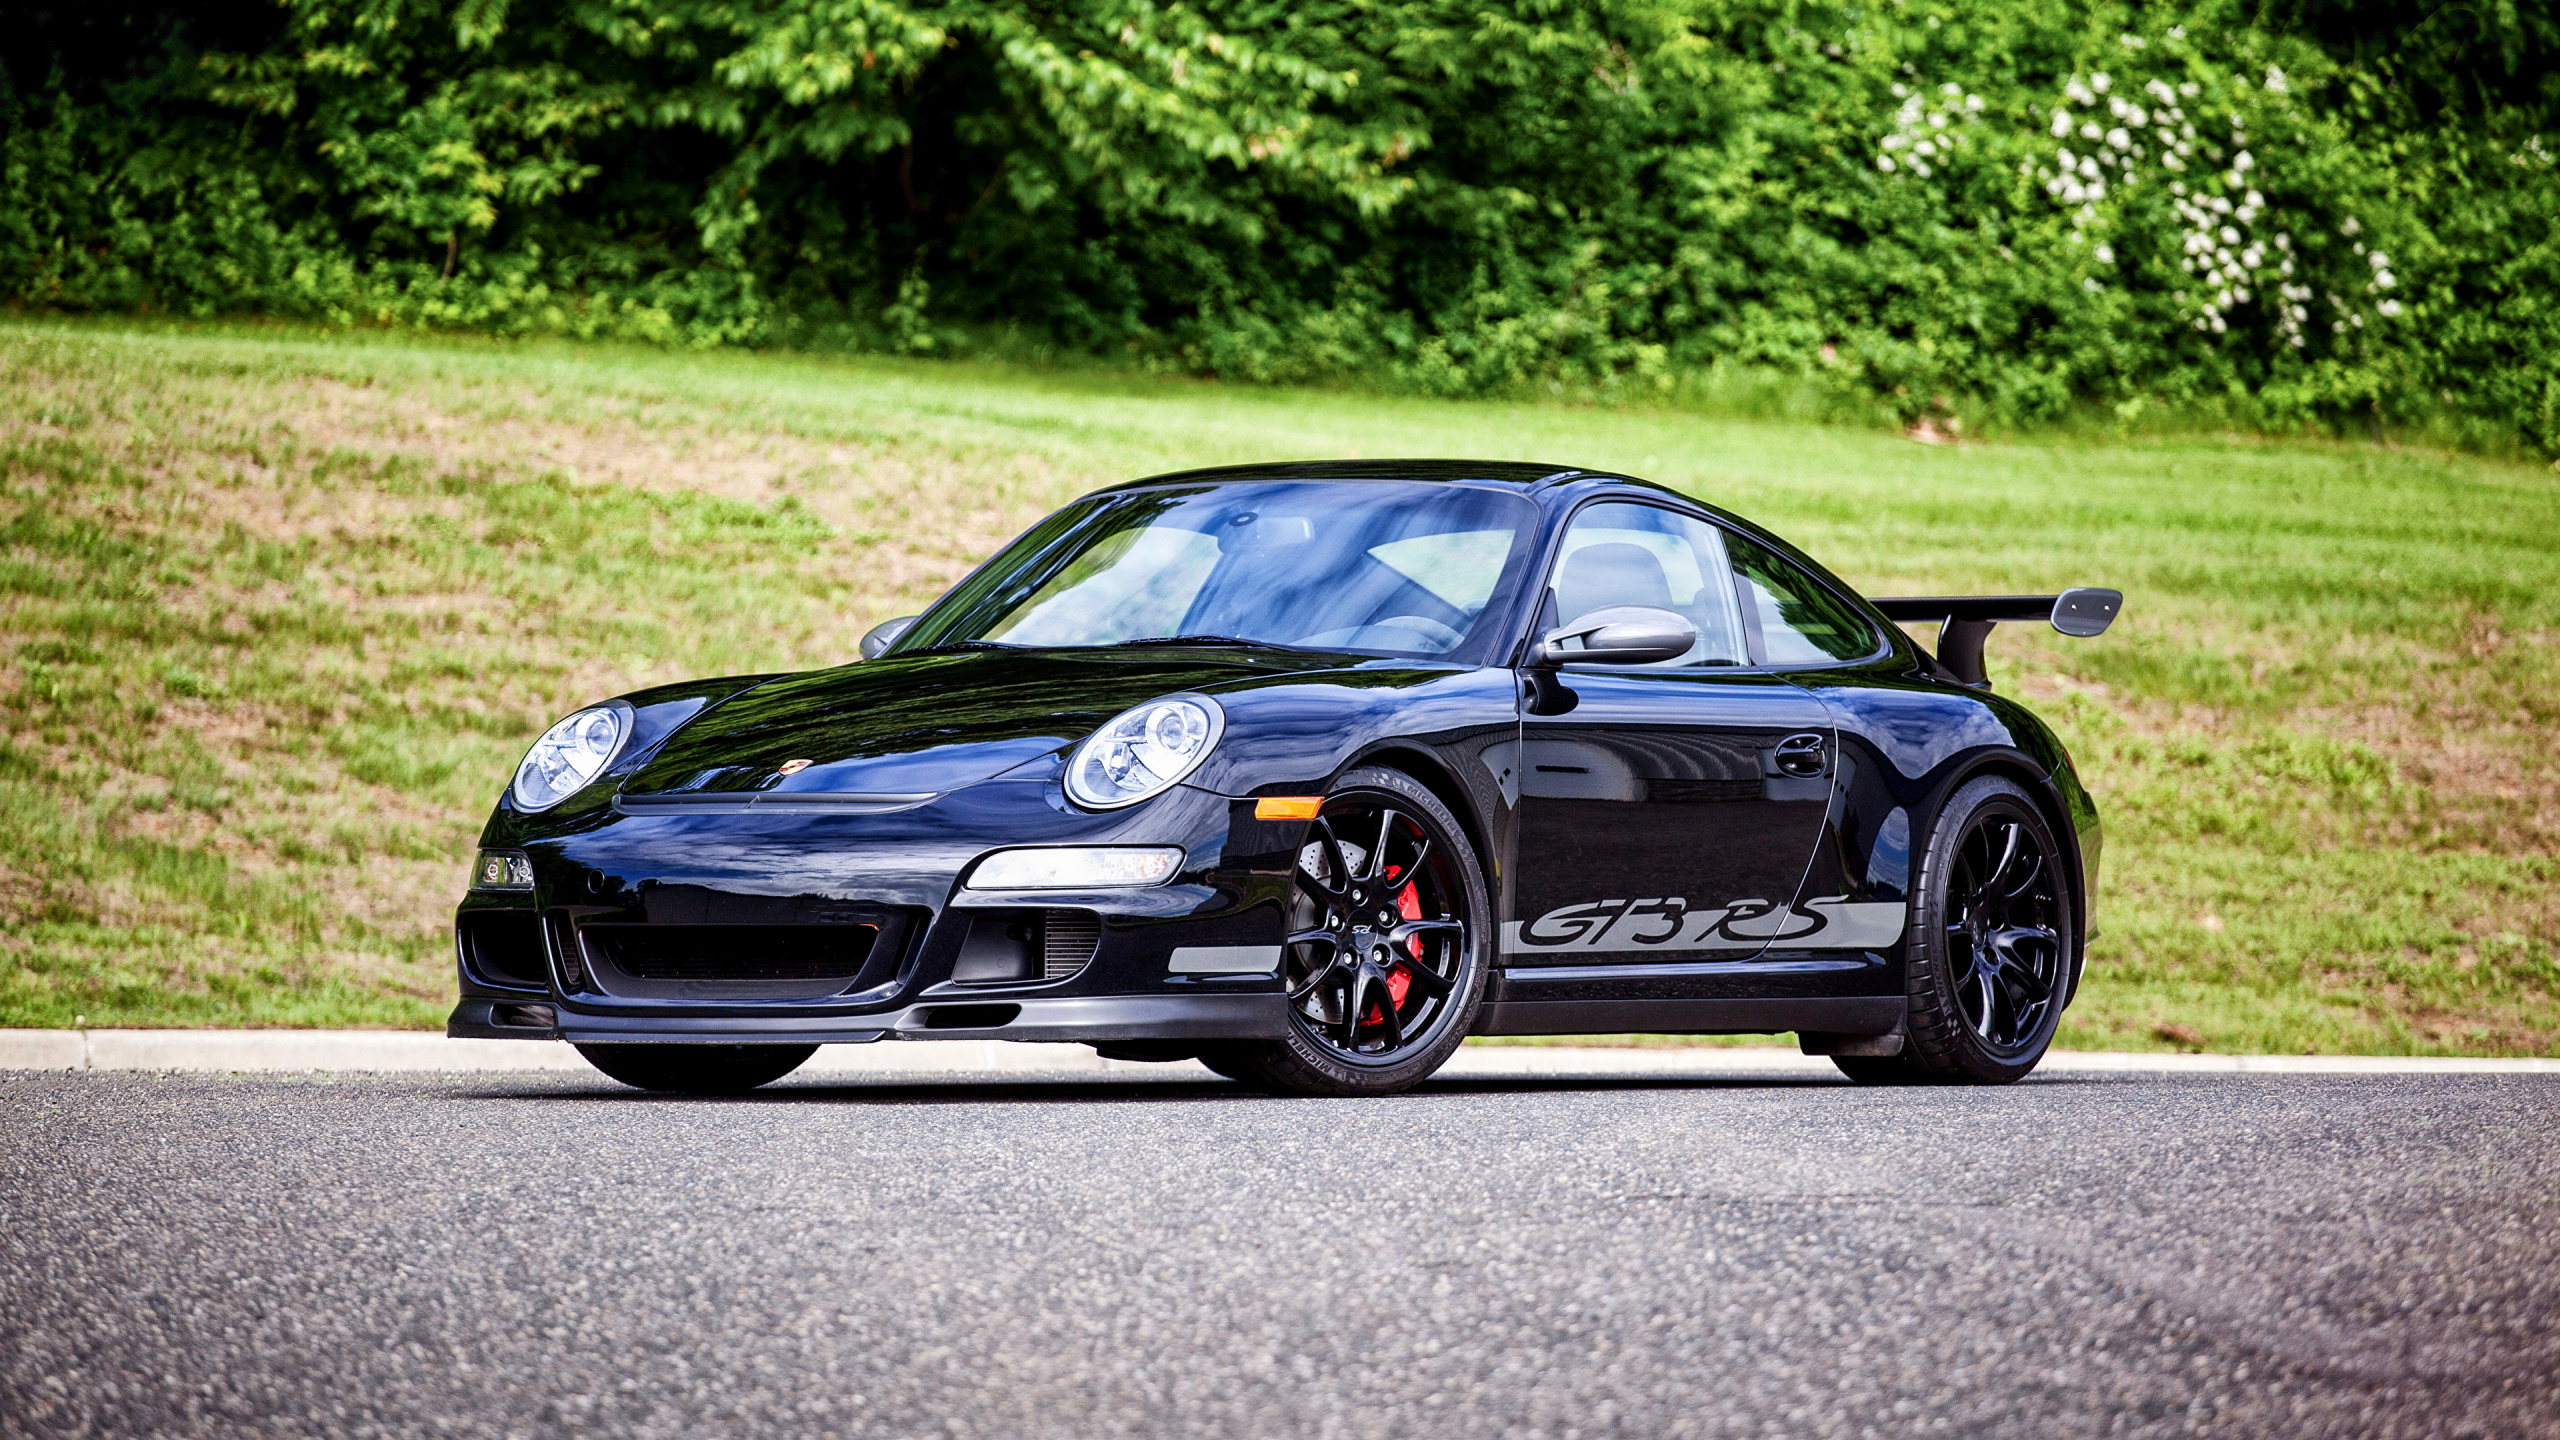 Black Porsche 911 on Road During Daytime. Wallpaper in 2560x1440 Resolution